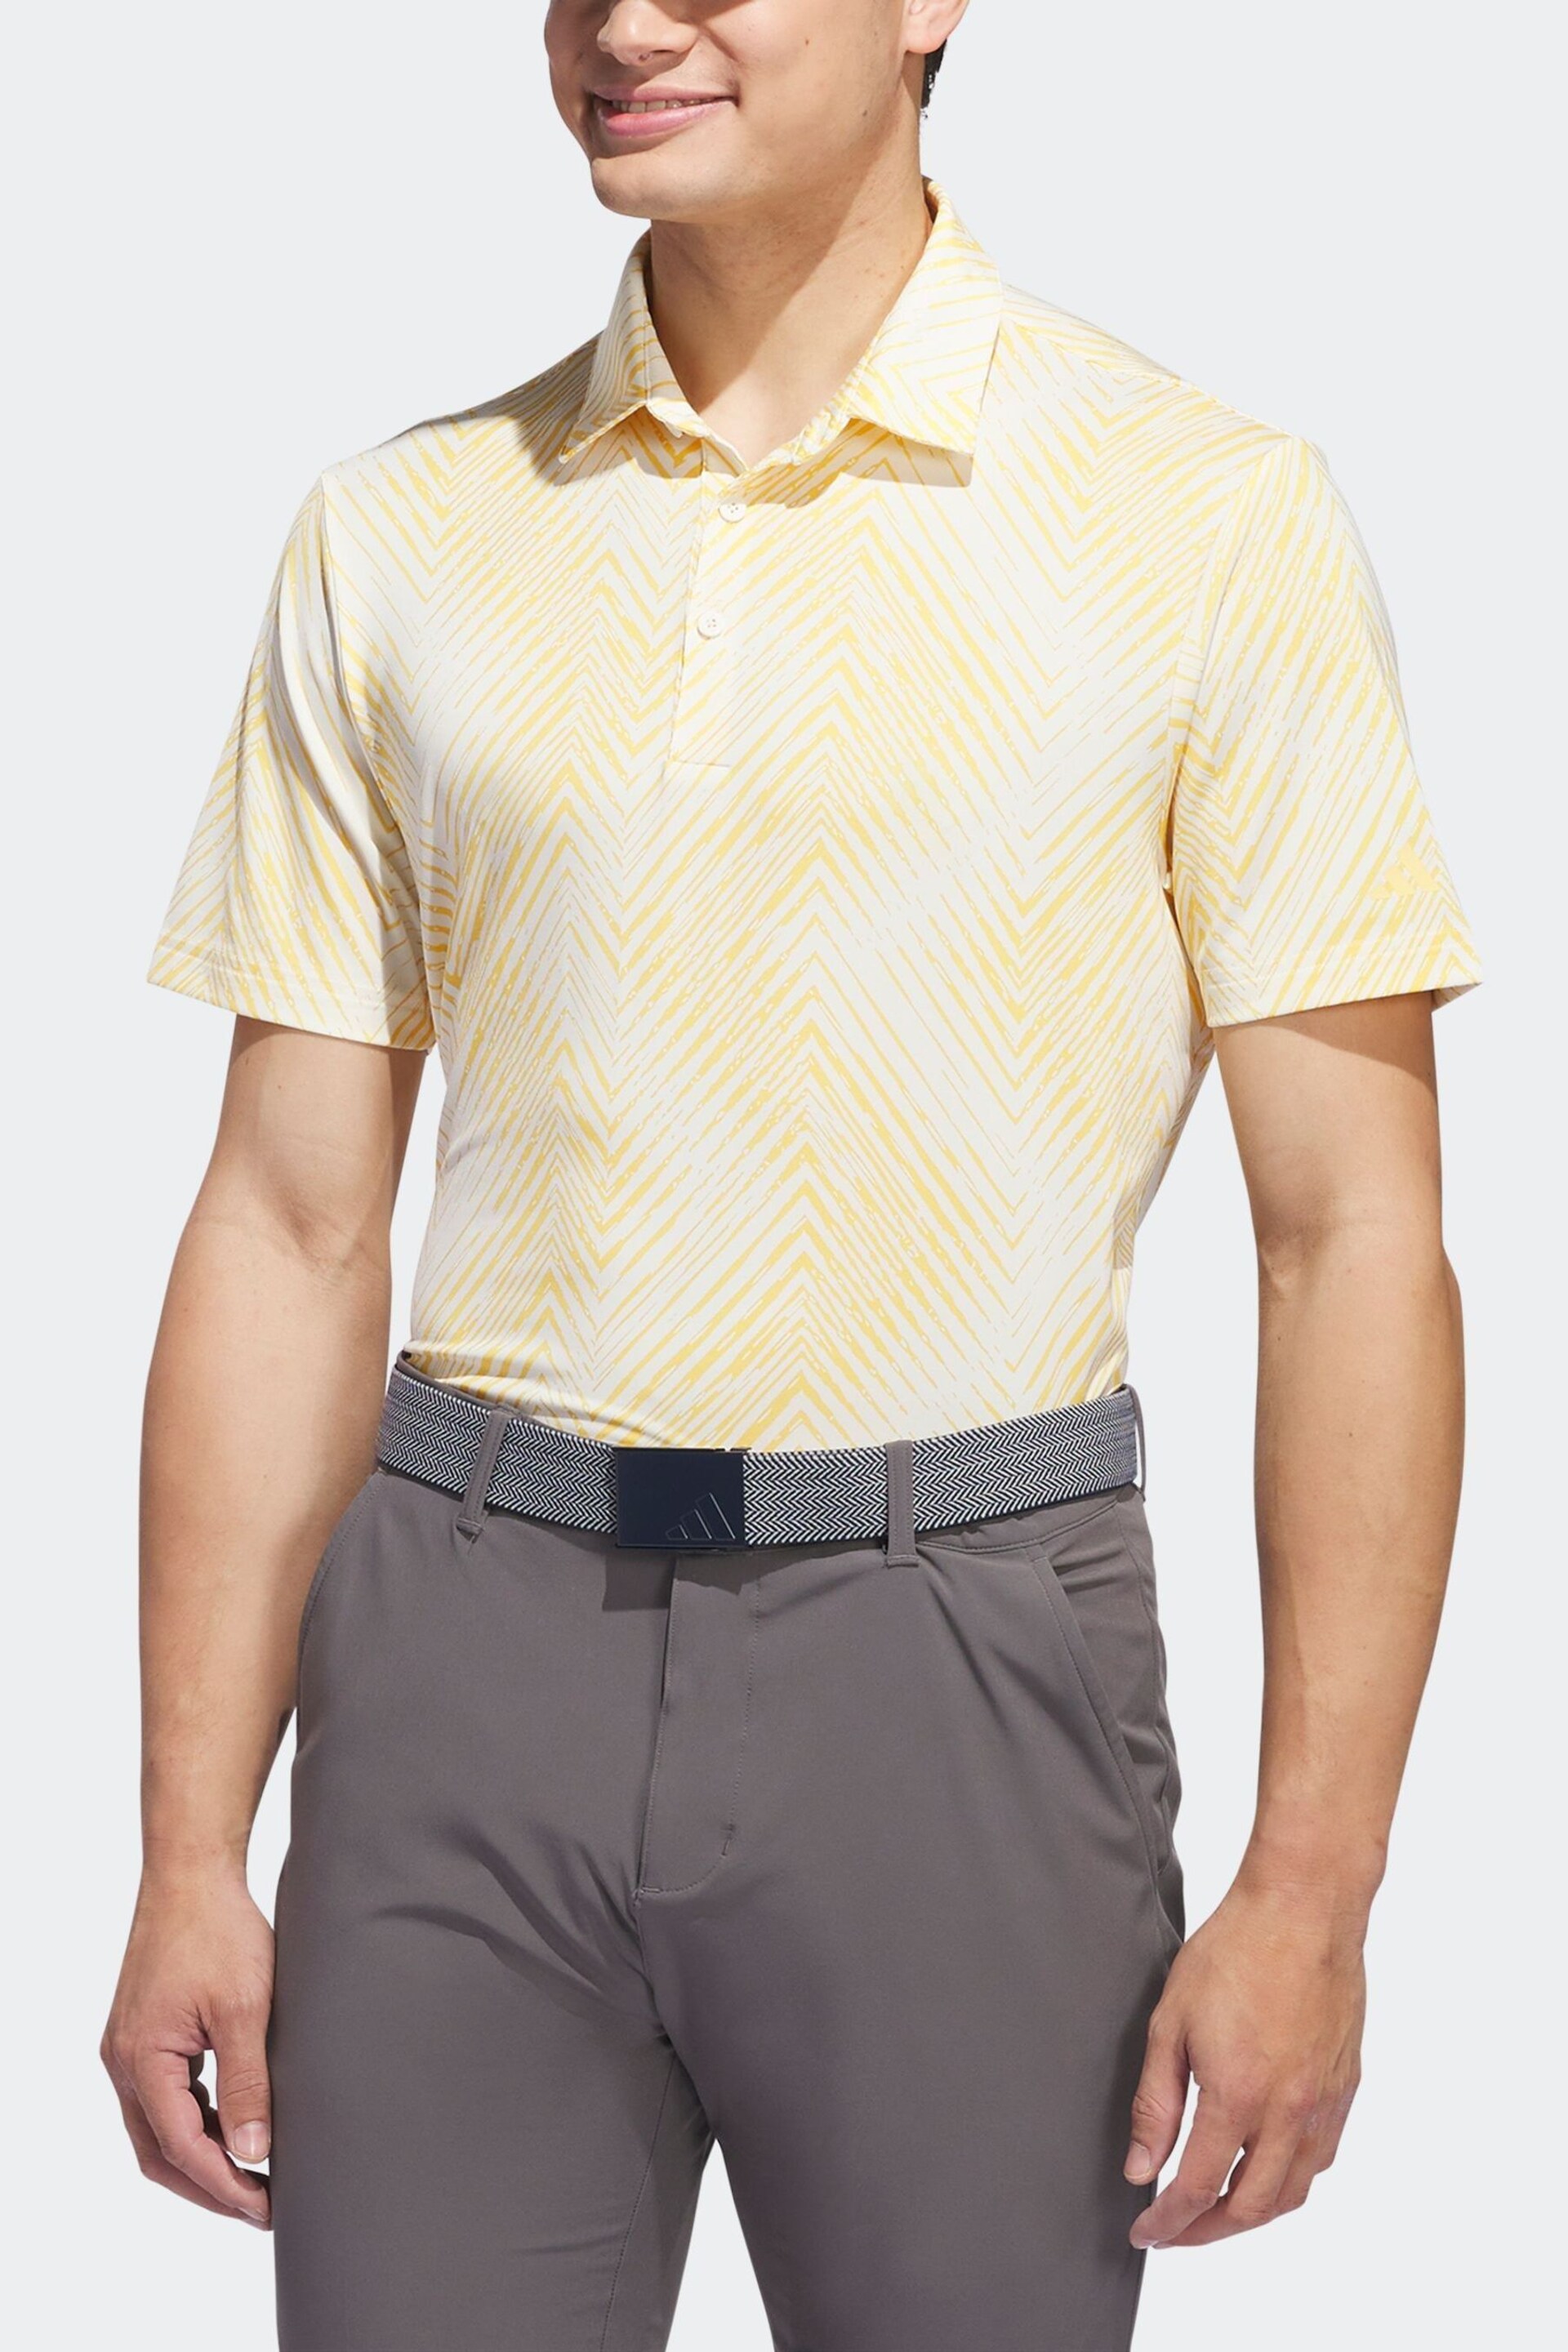 adidas Golf Ultimate 365 All Over Print Polo Shirt - Image 5 of 9